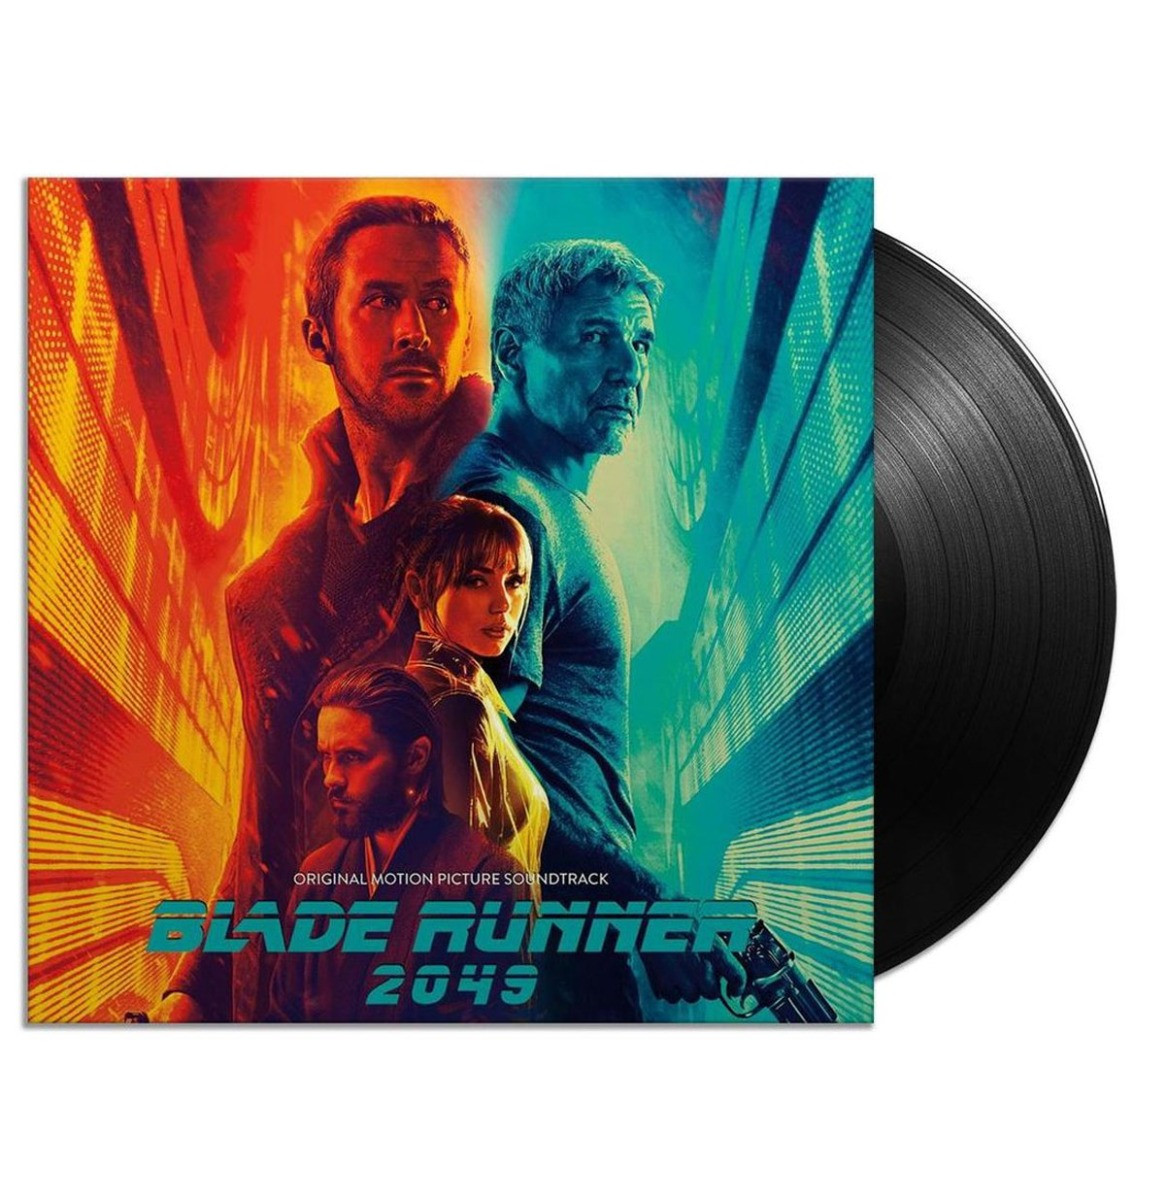 Original Motion Soundtrack LP - Blade Runner 2049